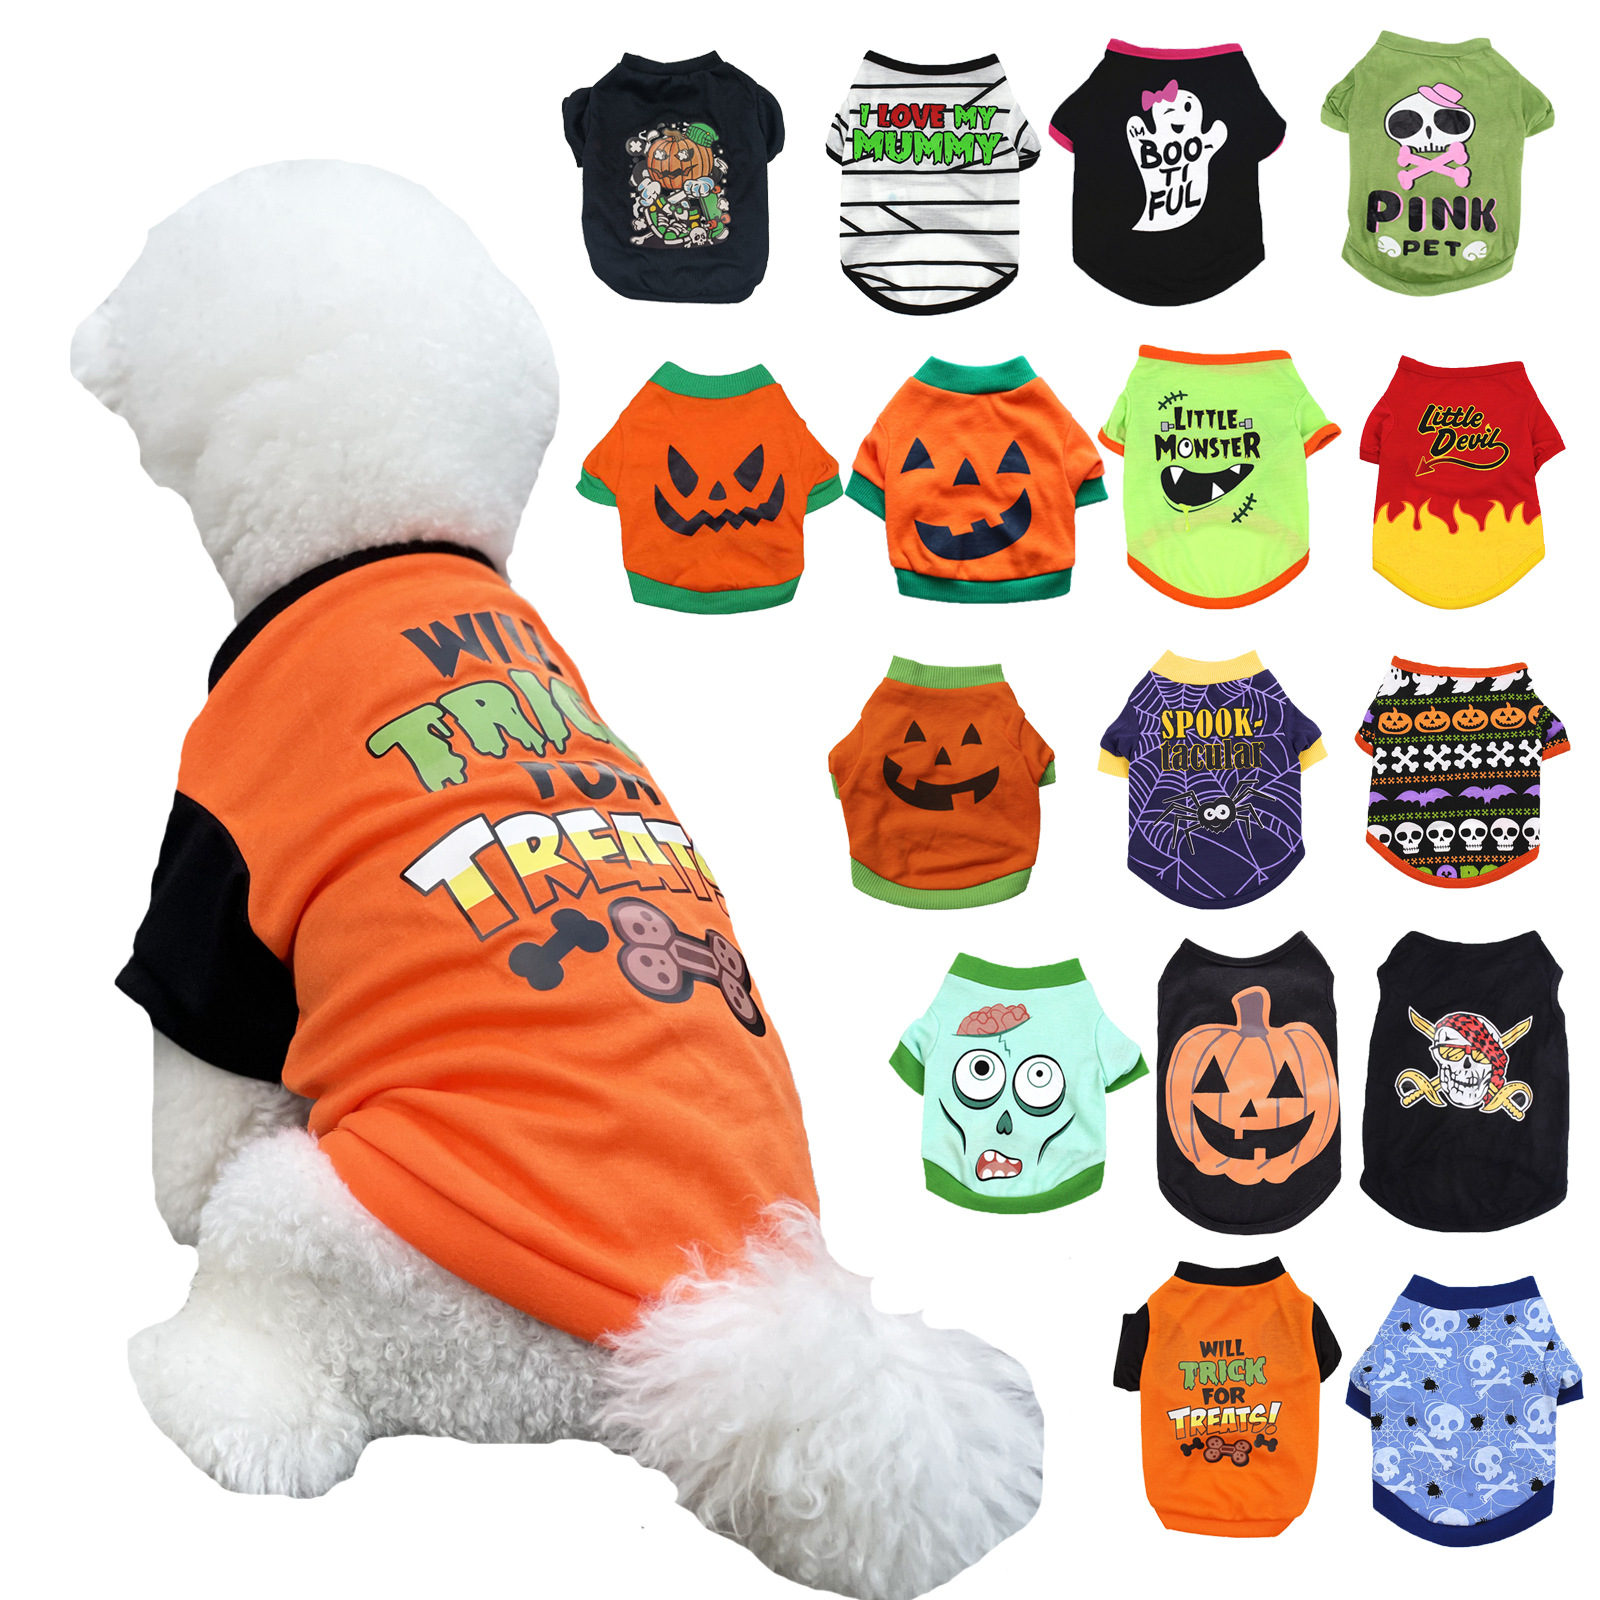 16 цветных хэллоуин собаки рубашка собаки одежда щенок домашних животных футболка призрачный костюм наряды милая тыква щенка одежда для маленькой собачкой кошек домашняя одежда вечеринка косплей A87